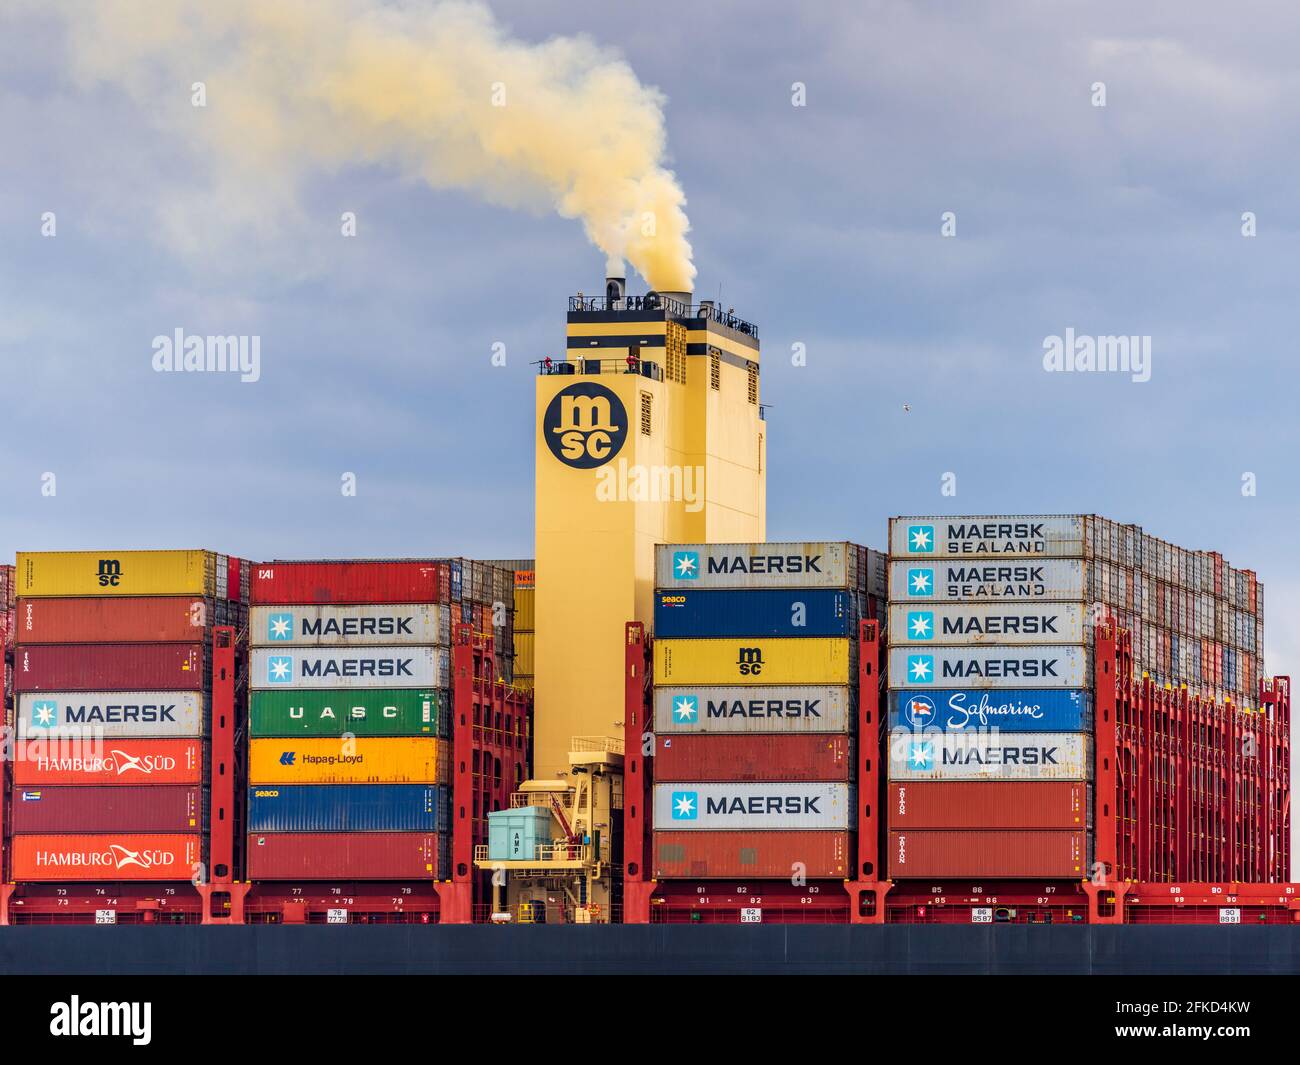 Pollution due à l'oxyde d'azote provenant de l'expédition - Evacuation de l'entonnoir des navires - Pollution des conteneurs - émissions de NOx oxyde d'azote riche ampoule jaune fumée Banque D'Images